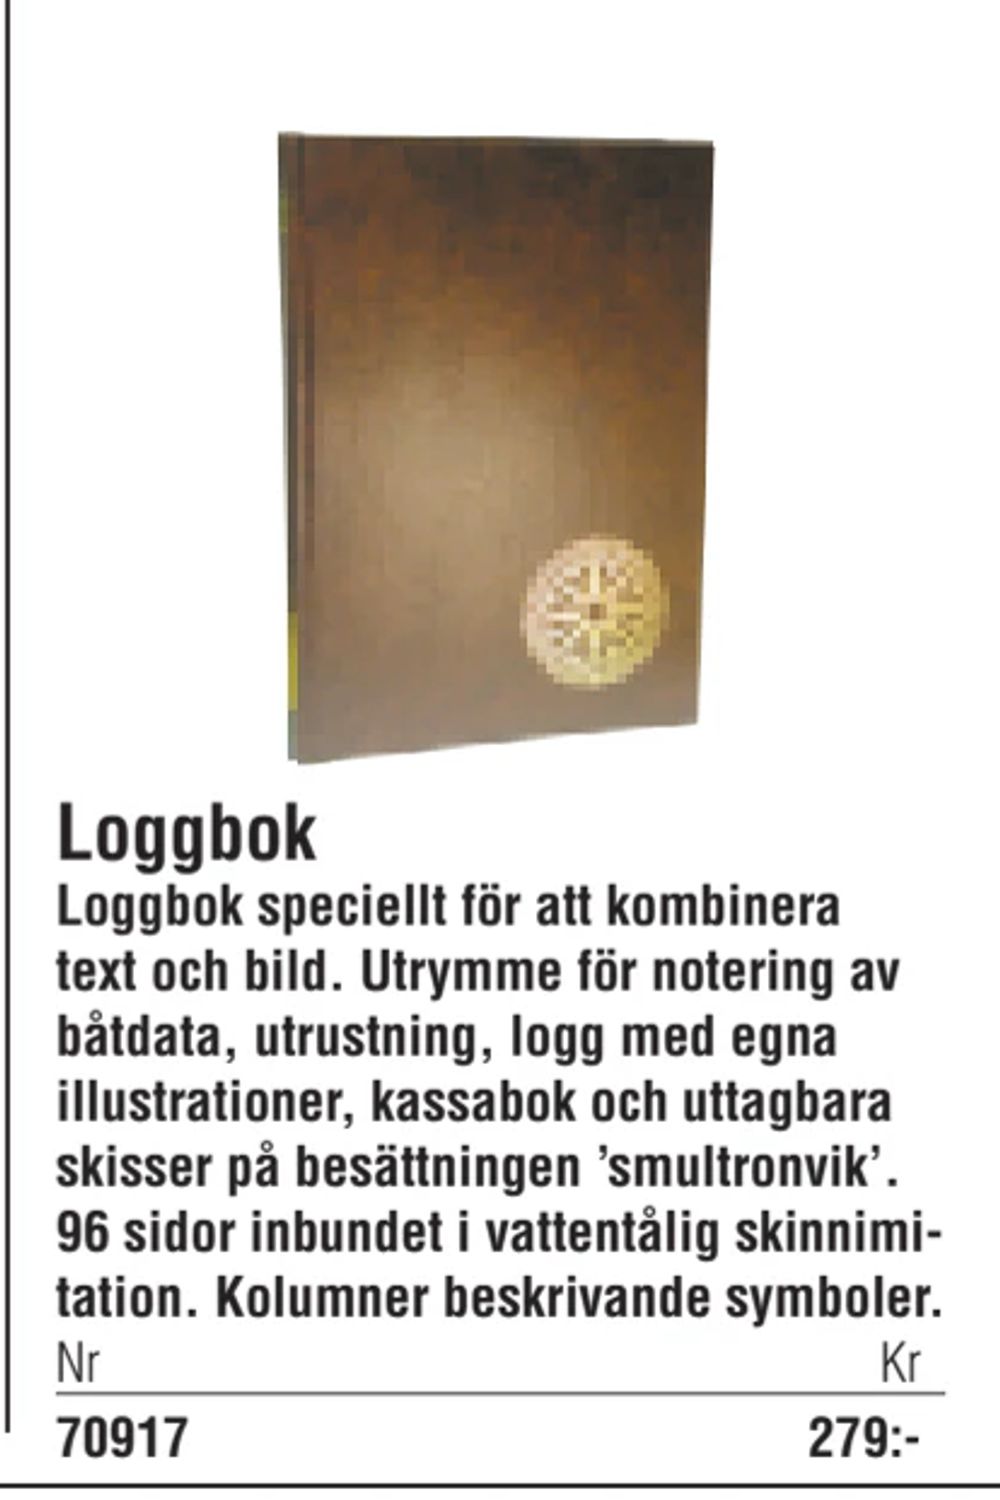 Erbjudanden på Loggbok från Erlandsons Brygga för 279 kr